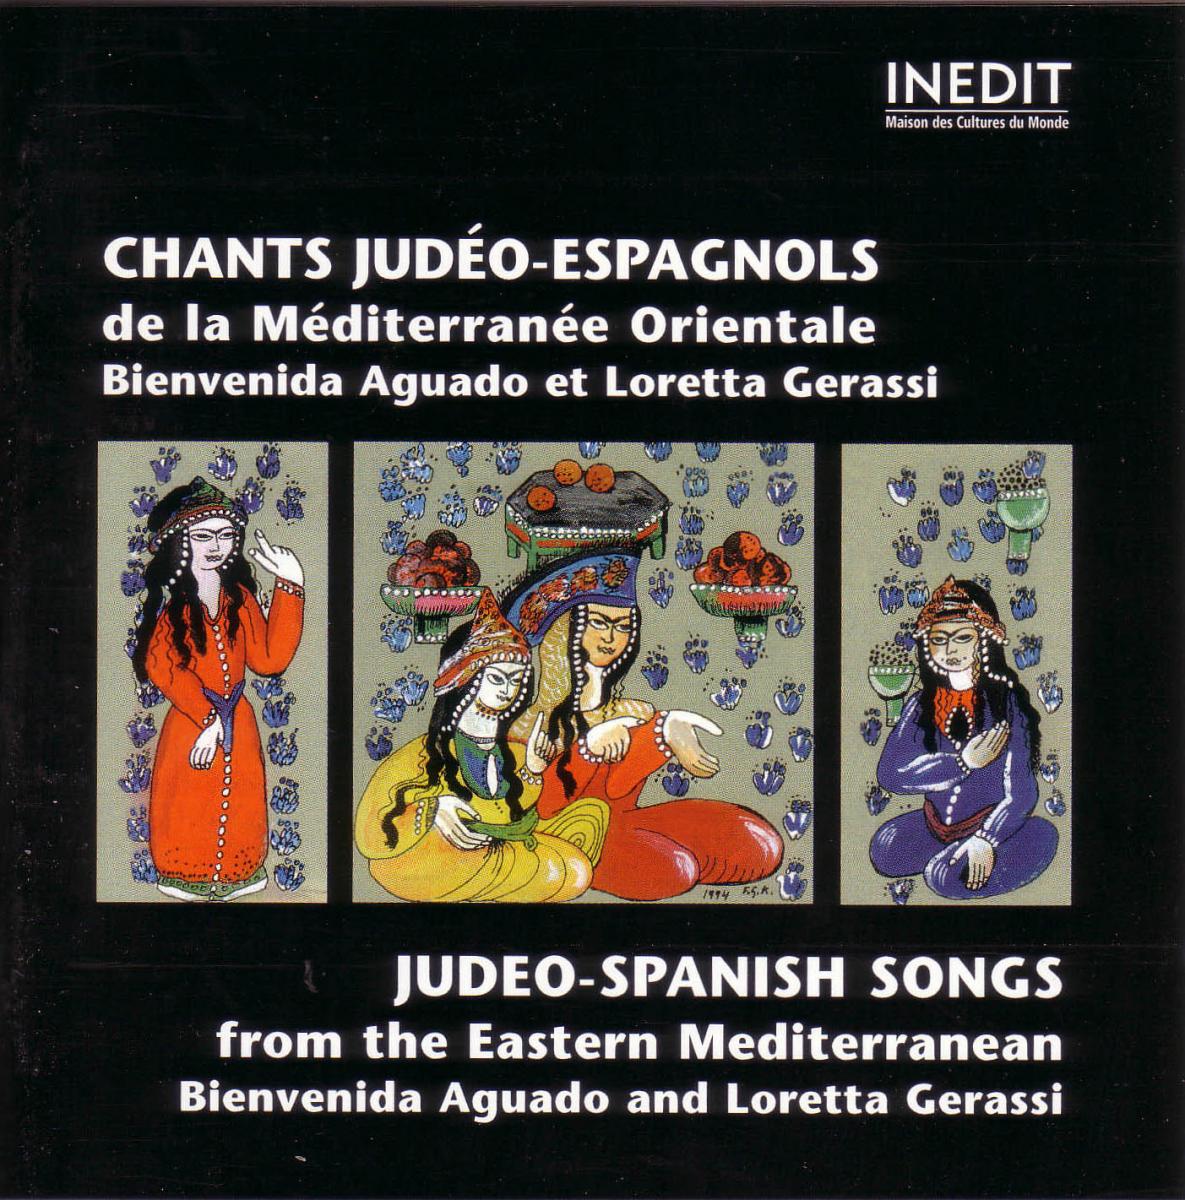 Image 5.1a CD Cover of Chants Judéo-Espagnols de la Mediterranée Orientale (view enlarged image)